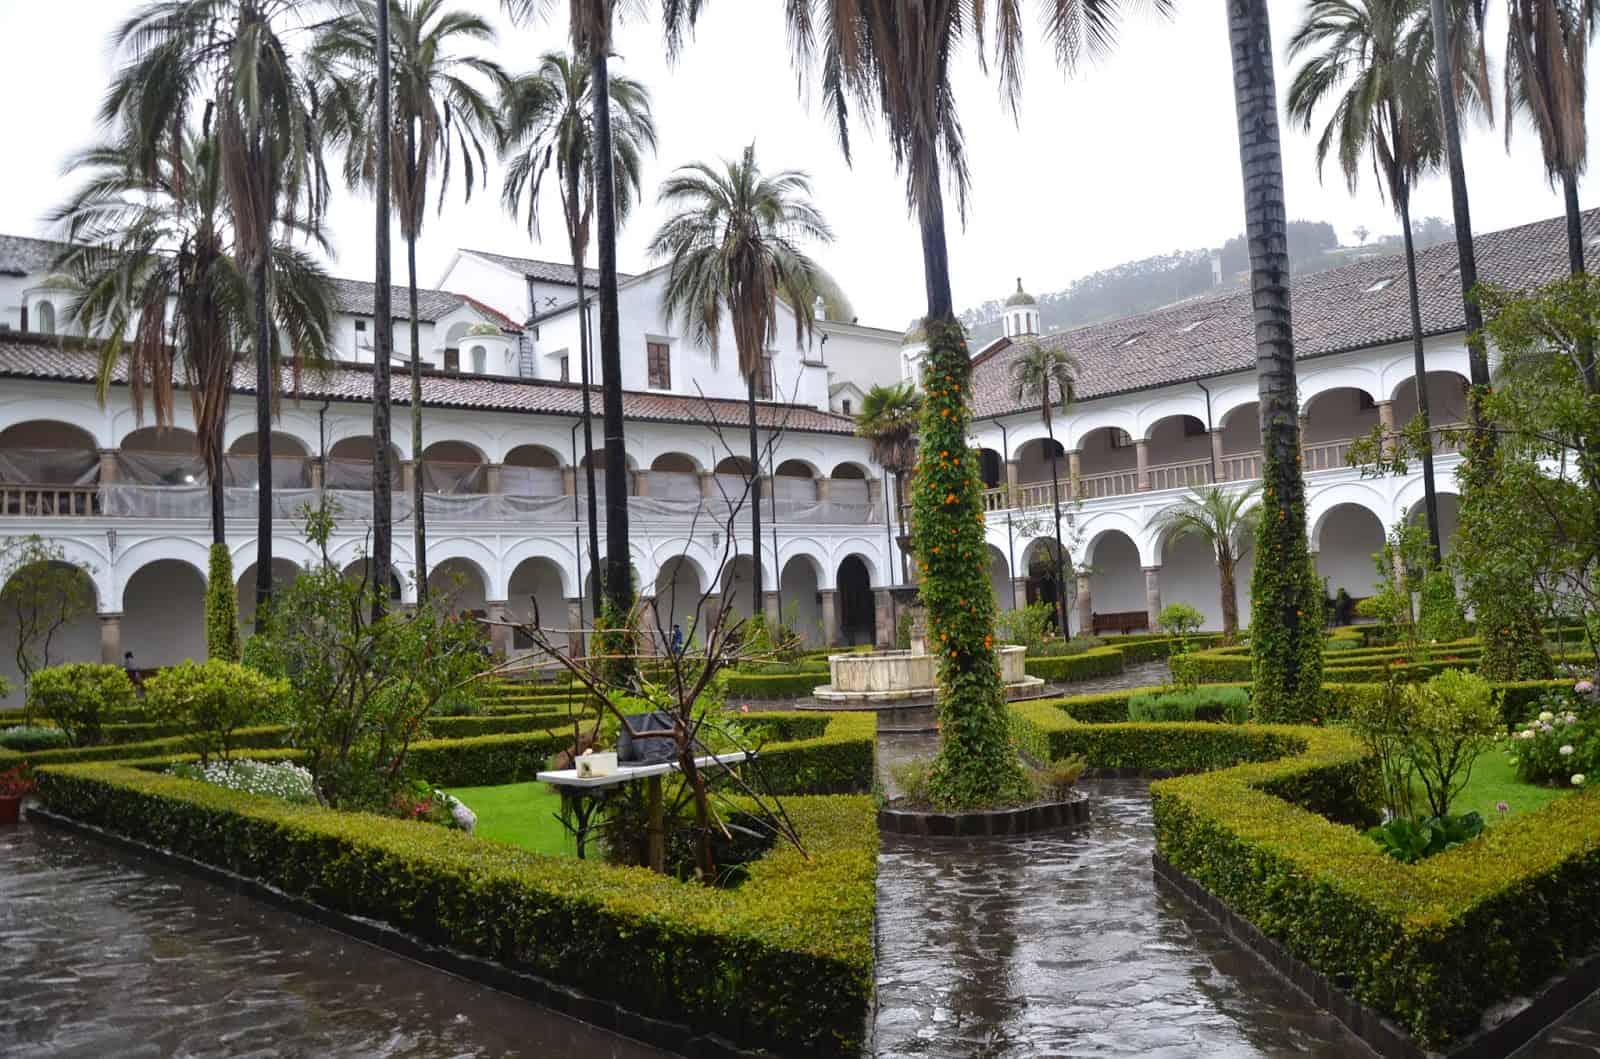 Franciscan Museum in Quito, Ecuador